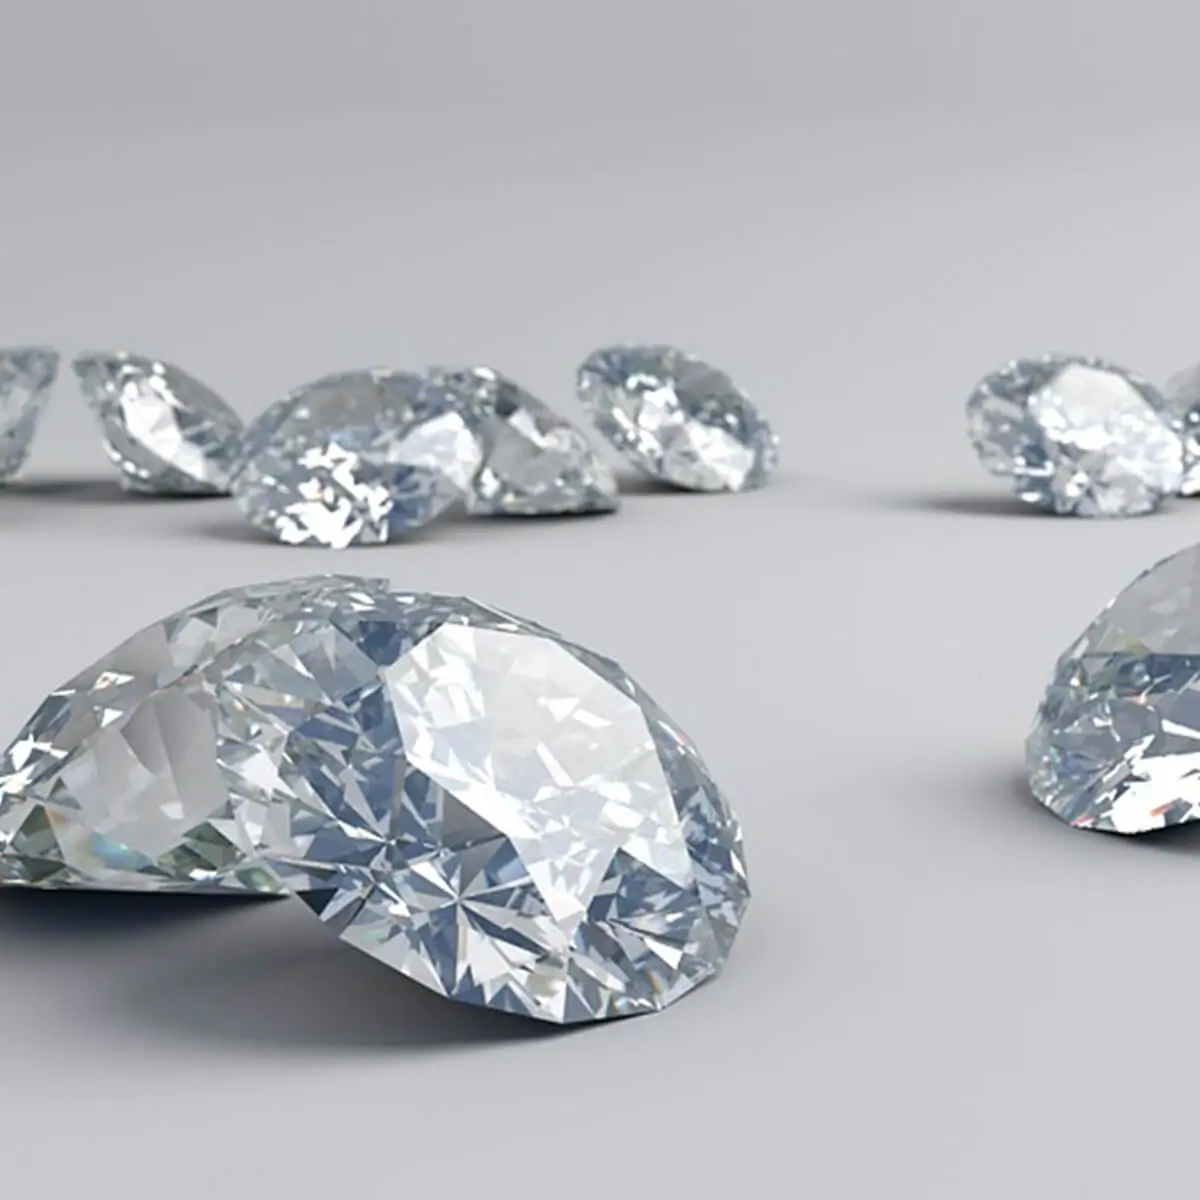 Valor de las piedras preciosas: ¿cuánto afecta el factor pureza?